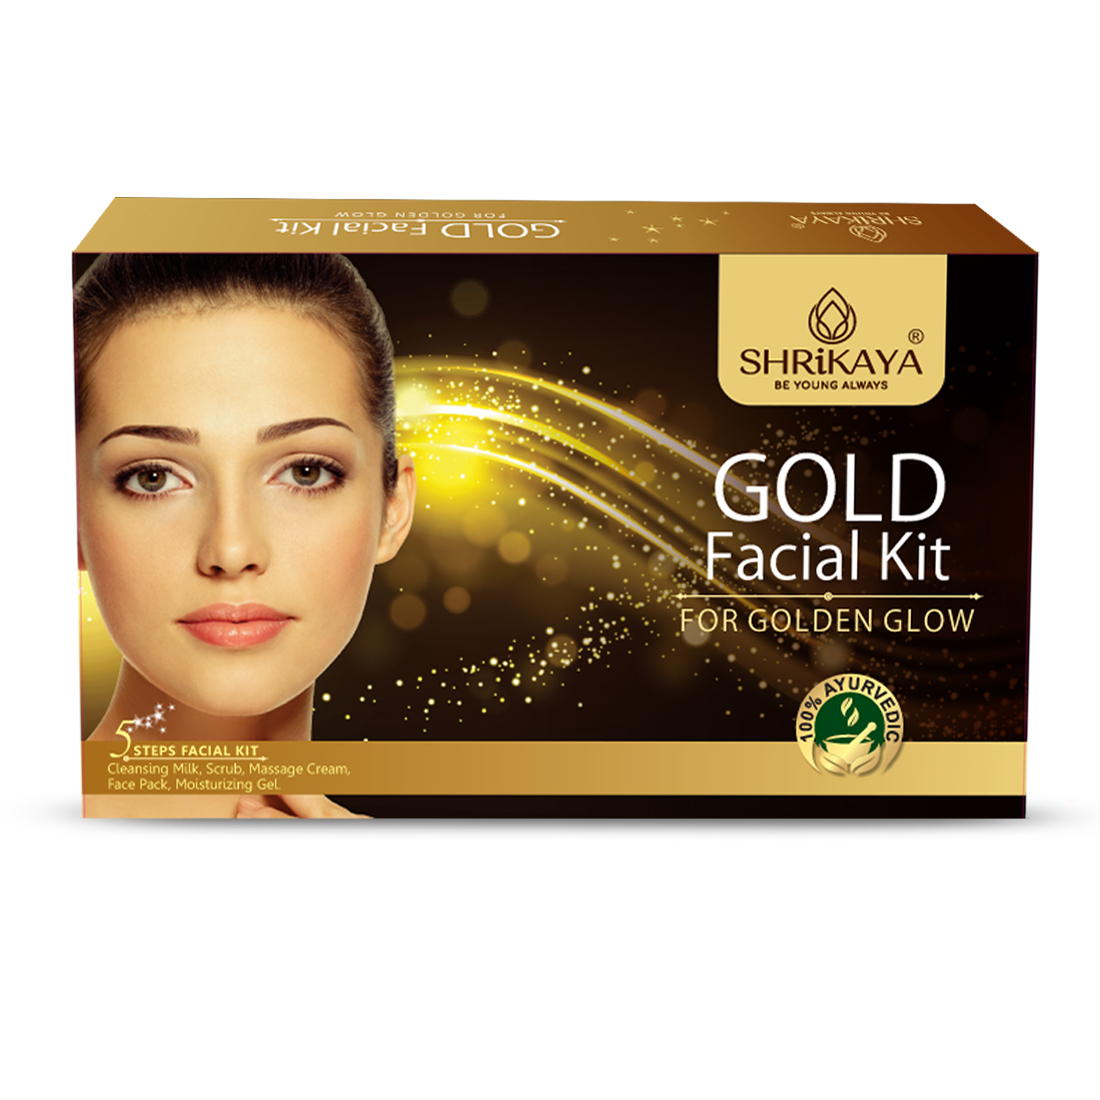 Gold facial kit